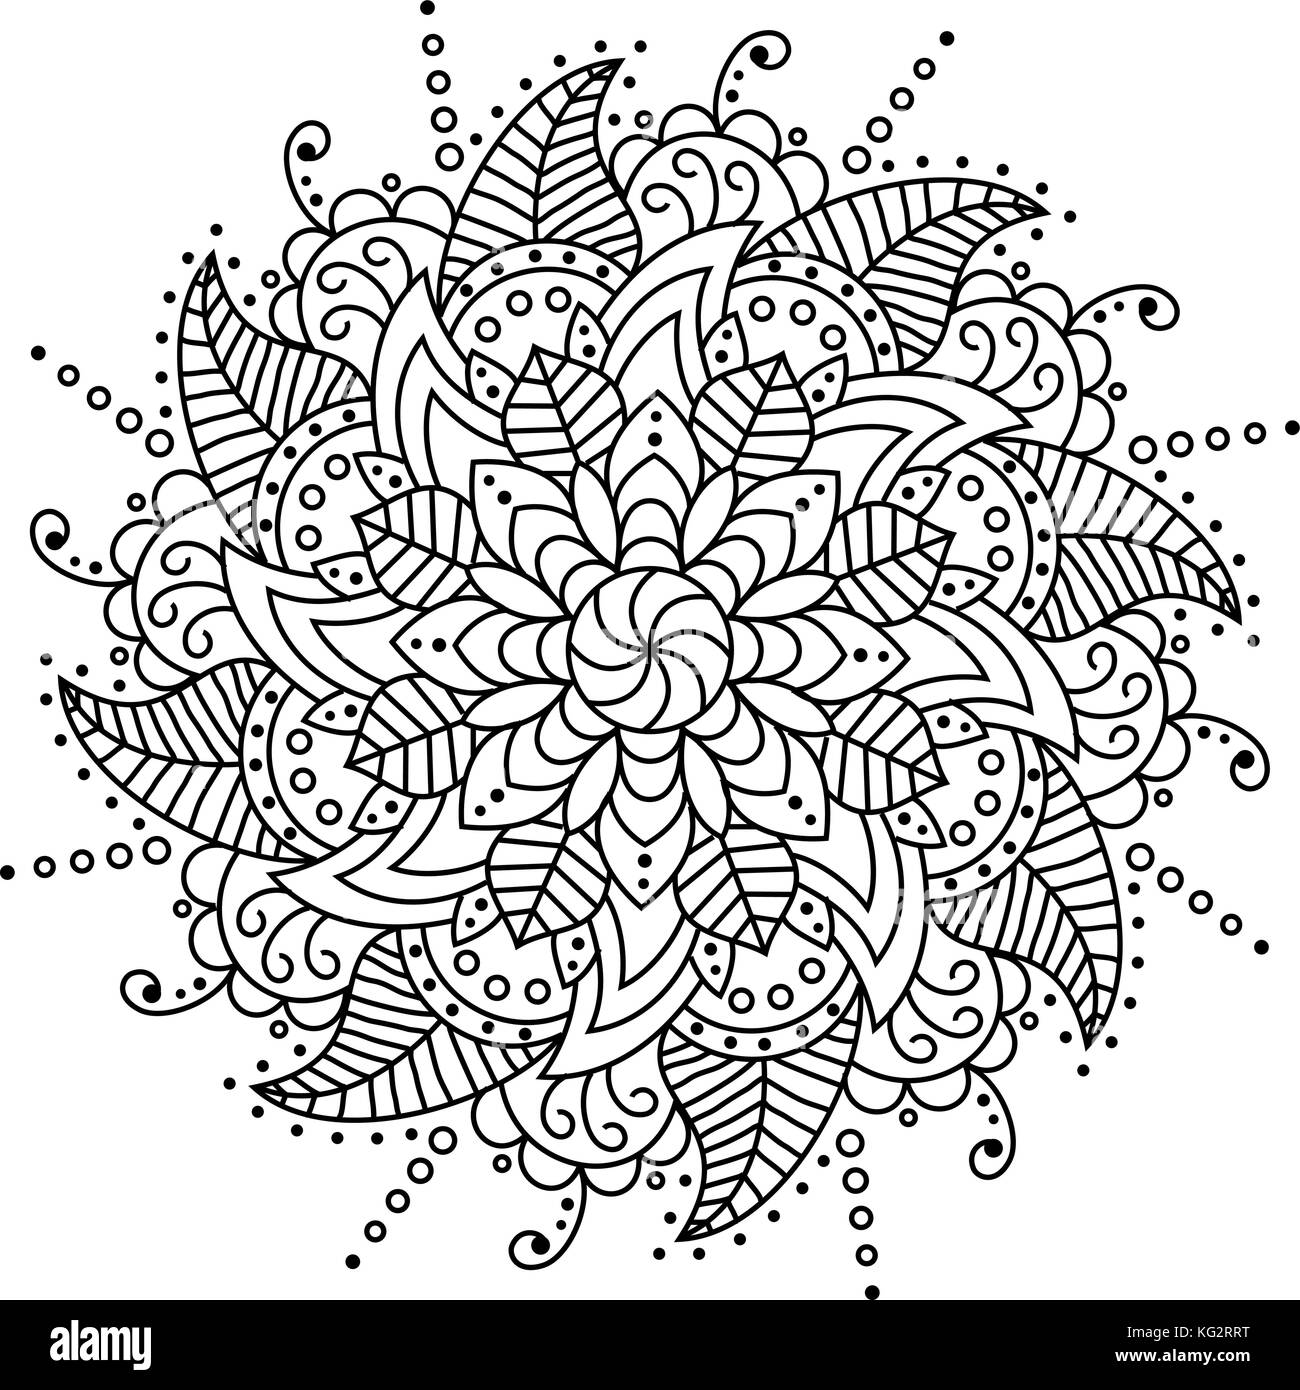 Coloriage Mandala Floral Adultes Kdp Coloriage Mandala Adulte Kdp  Intérieur. Mandalas à Colorier